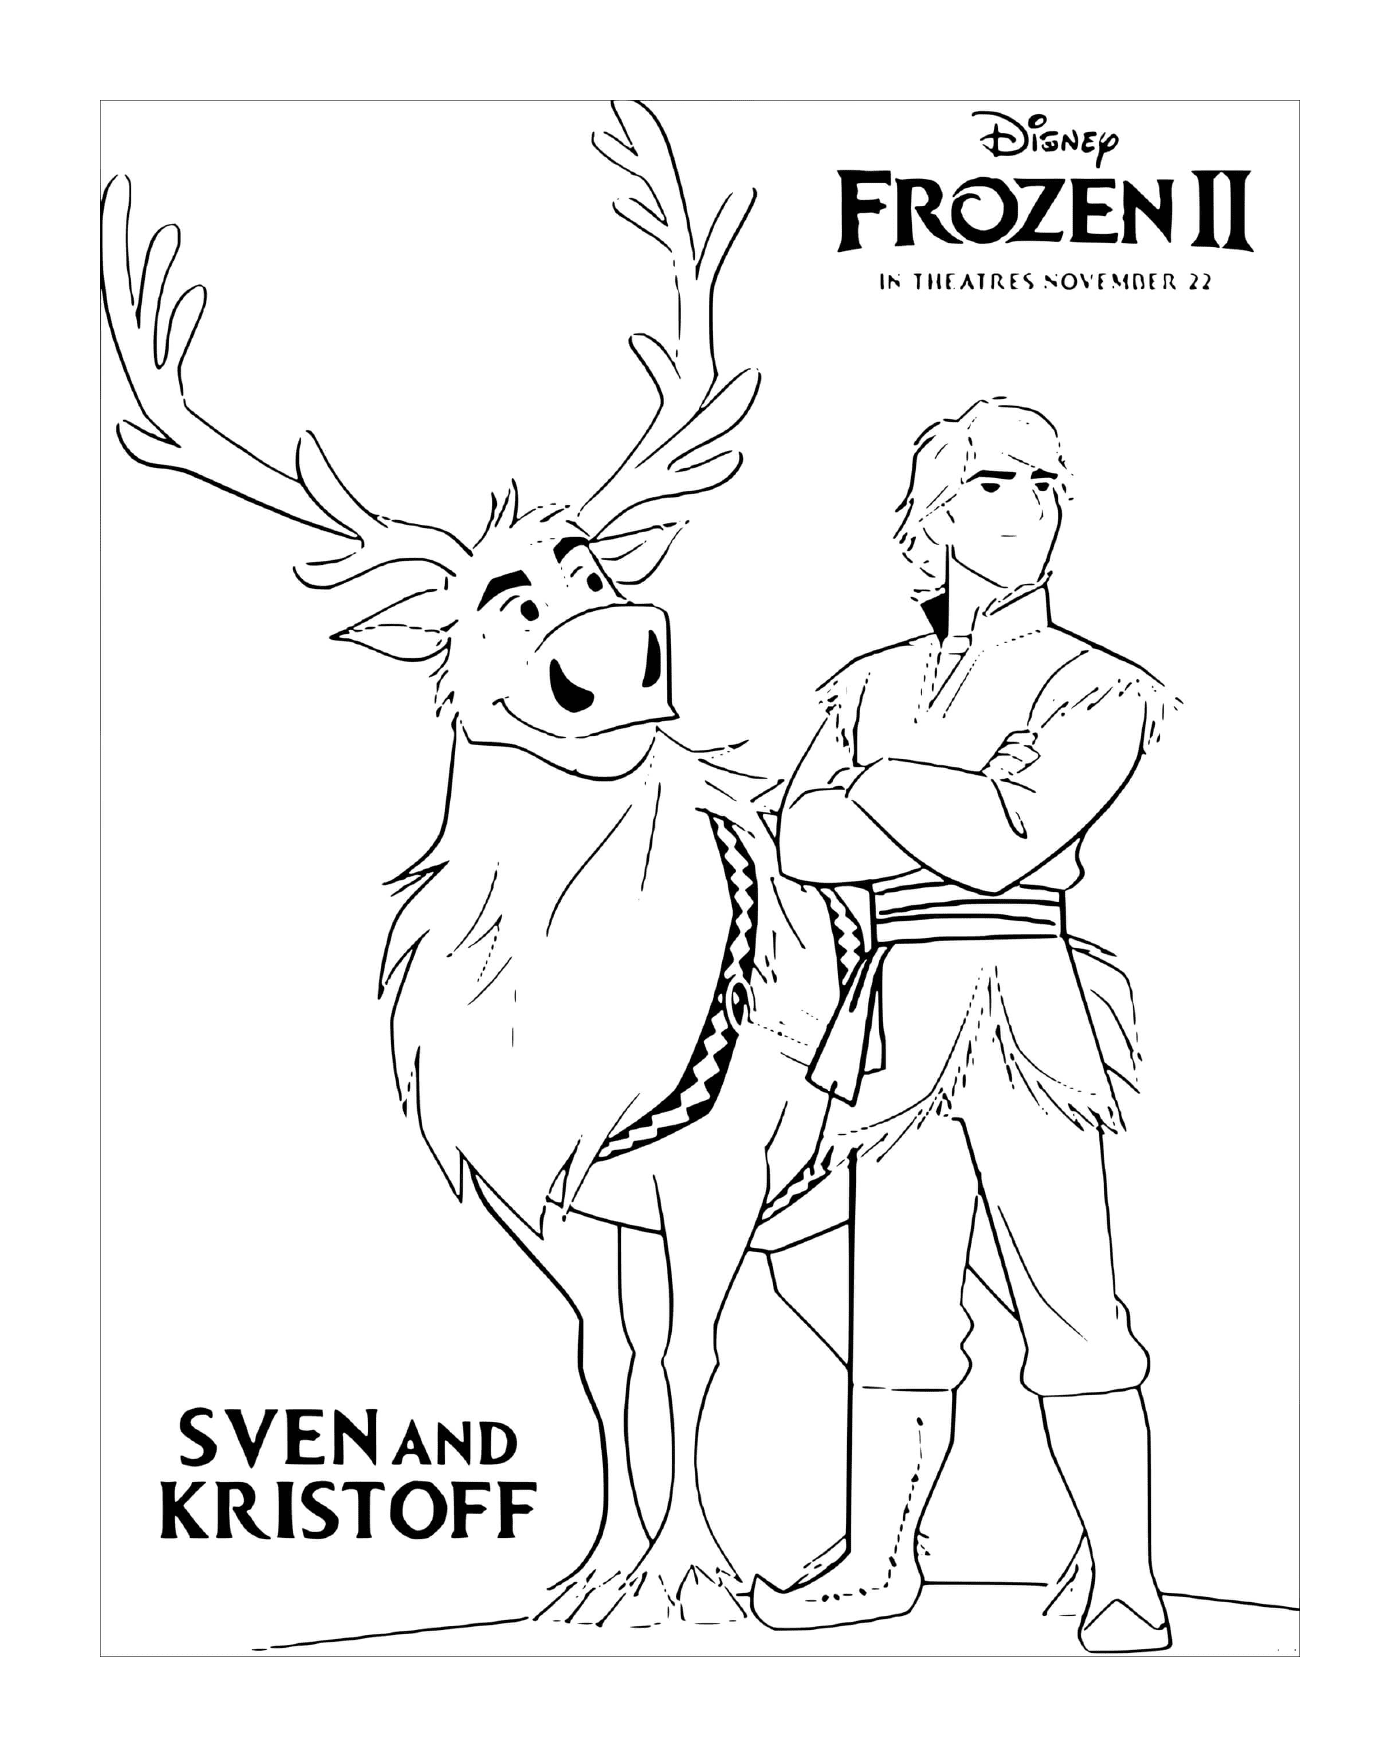  Sven e Kristoff stanno cercando Elsa 